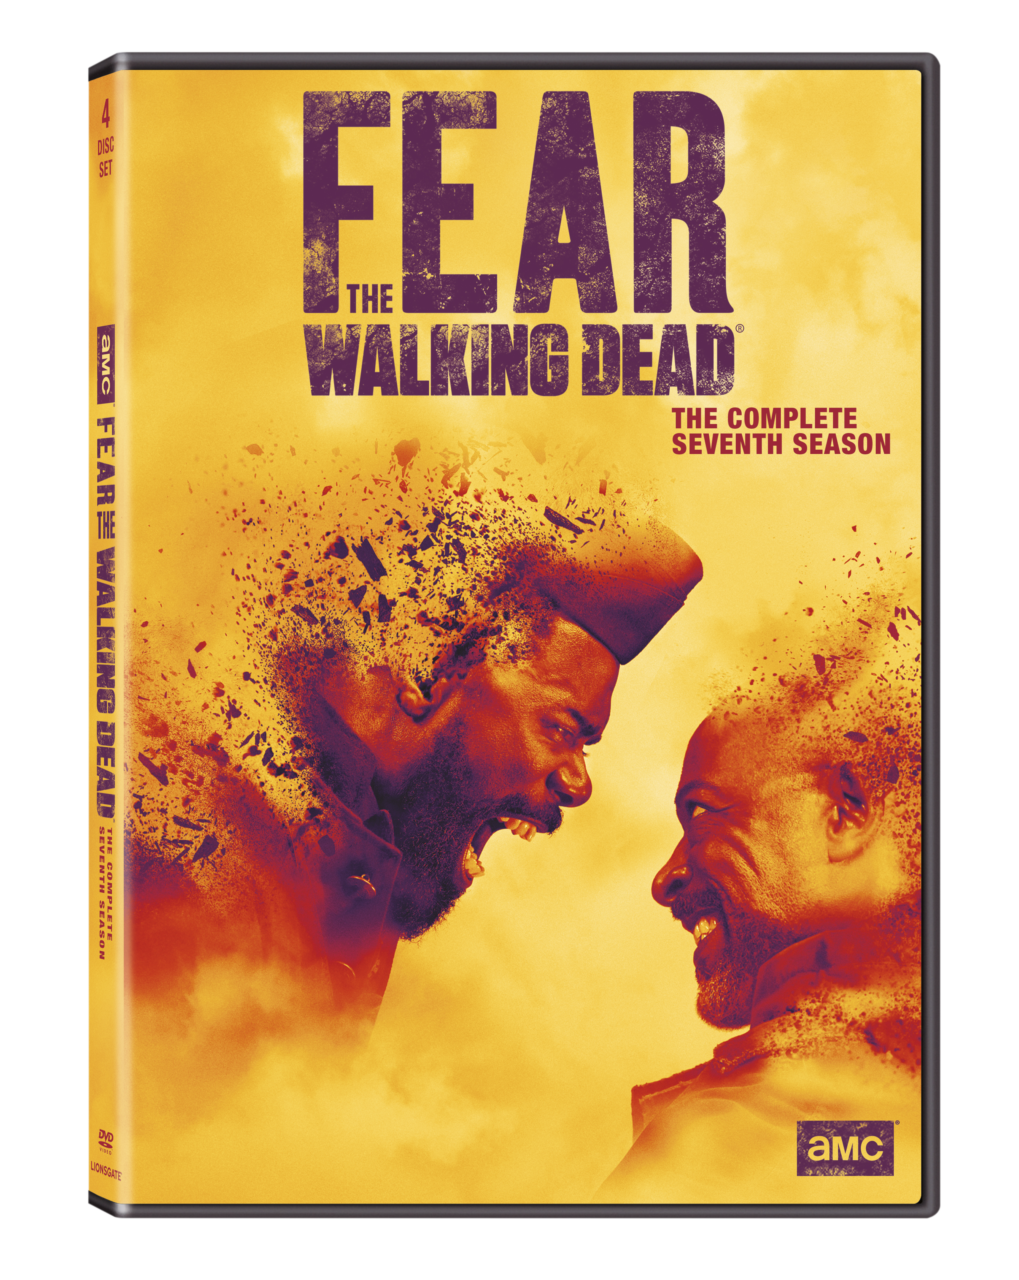 Fear The Walking Dead Season 7 DVD cover (Lionsgate)